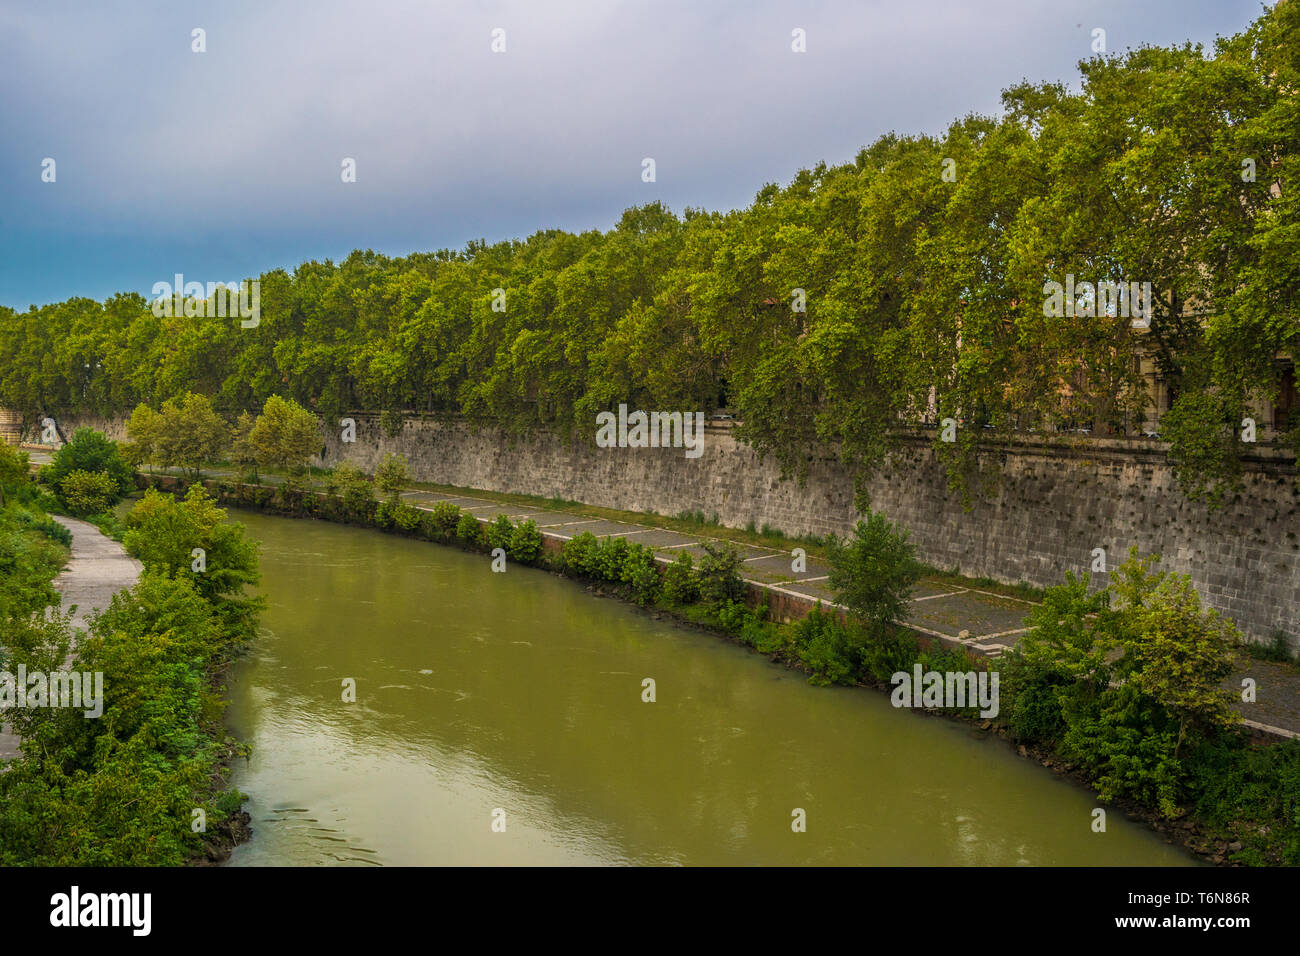 Tiber River under the Fabricio Bridge in Rome - Italy Stock Photo